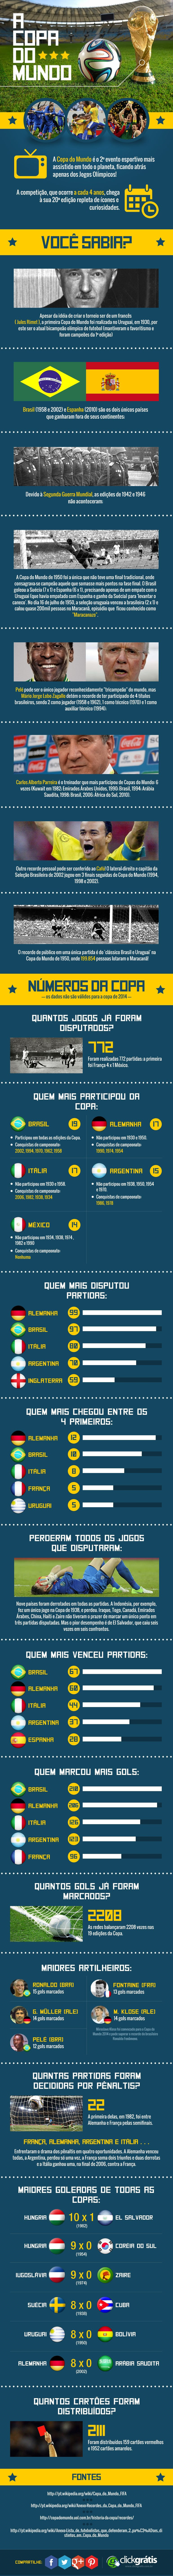 Infográfico da Copa do Mundo - CLIQUE PARA COMPARTILHAR